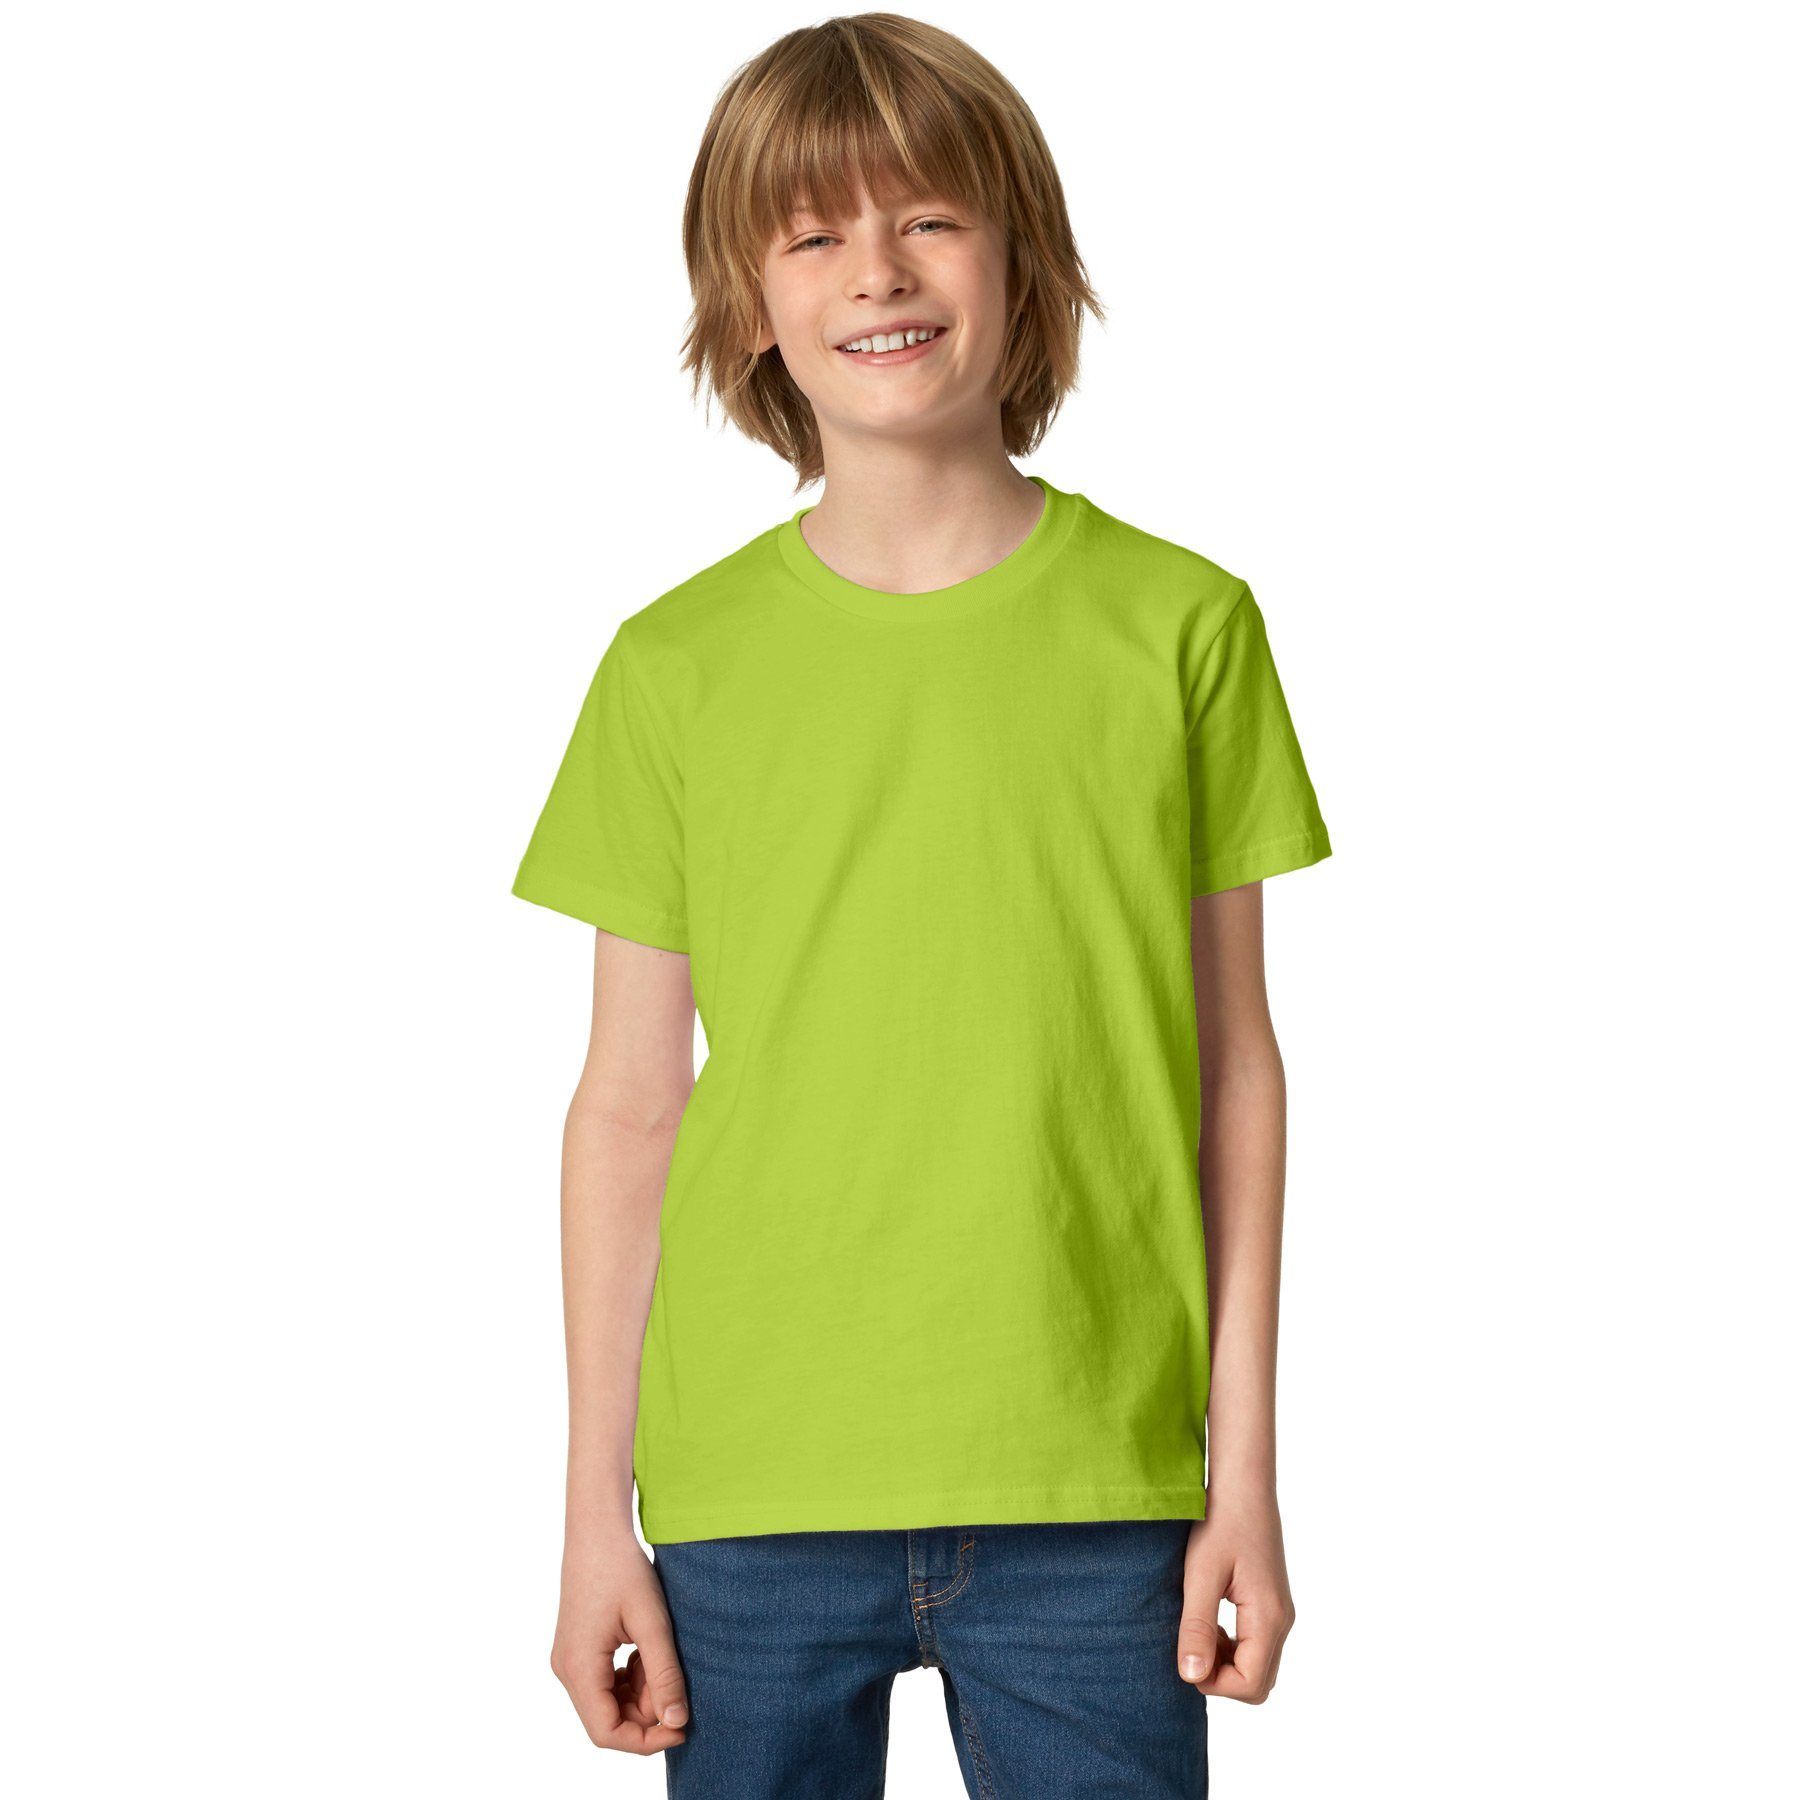 dressforfun T-Shirt T-Shirt Korientalisch Rundhals hellgrün